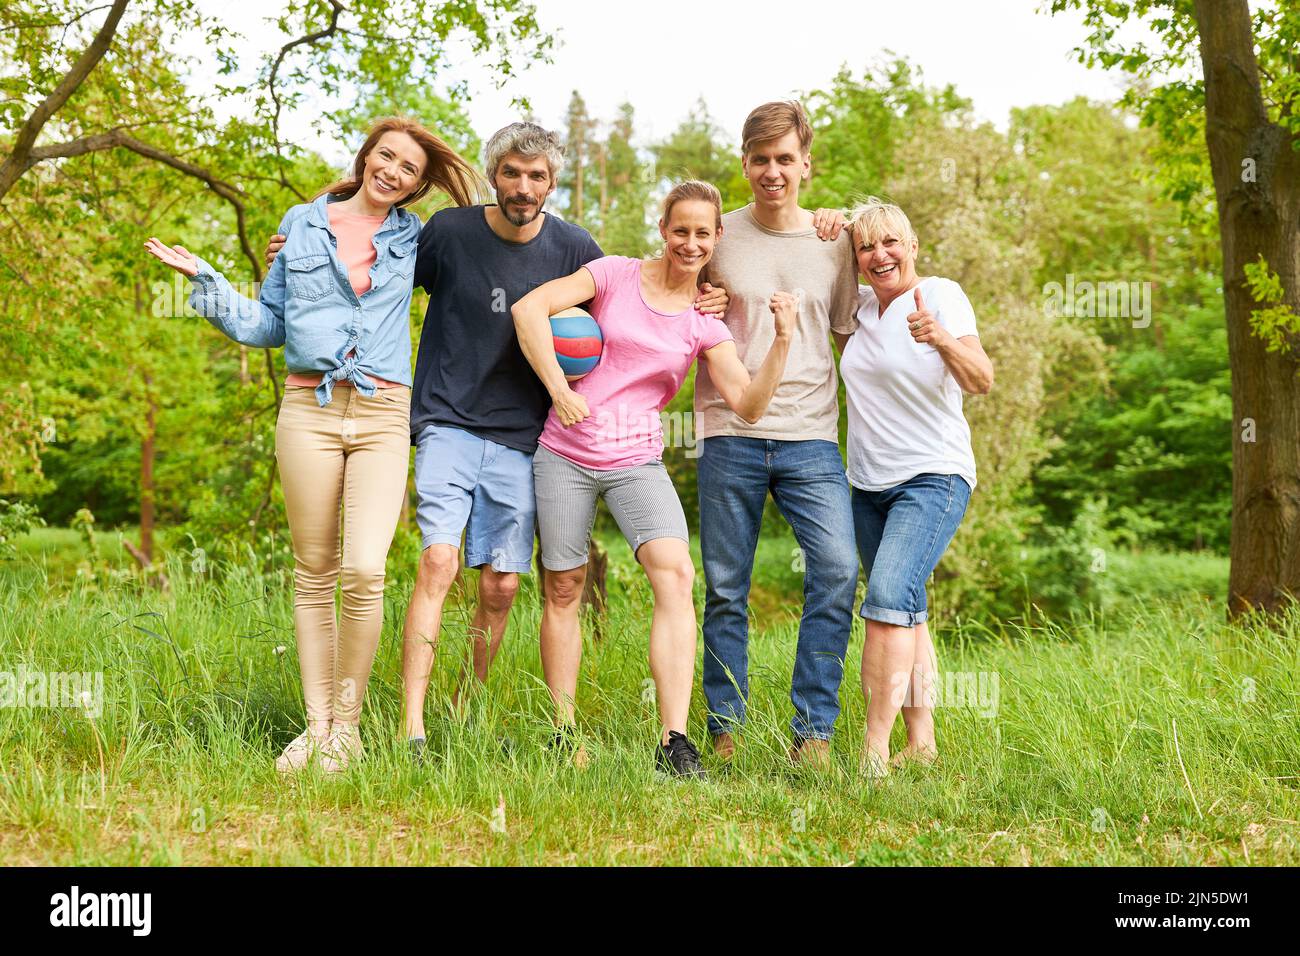 Cinco amigos están al lado como un equipo de fútbol en un prado en la naturaleza en verano Foto de stock